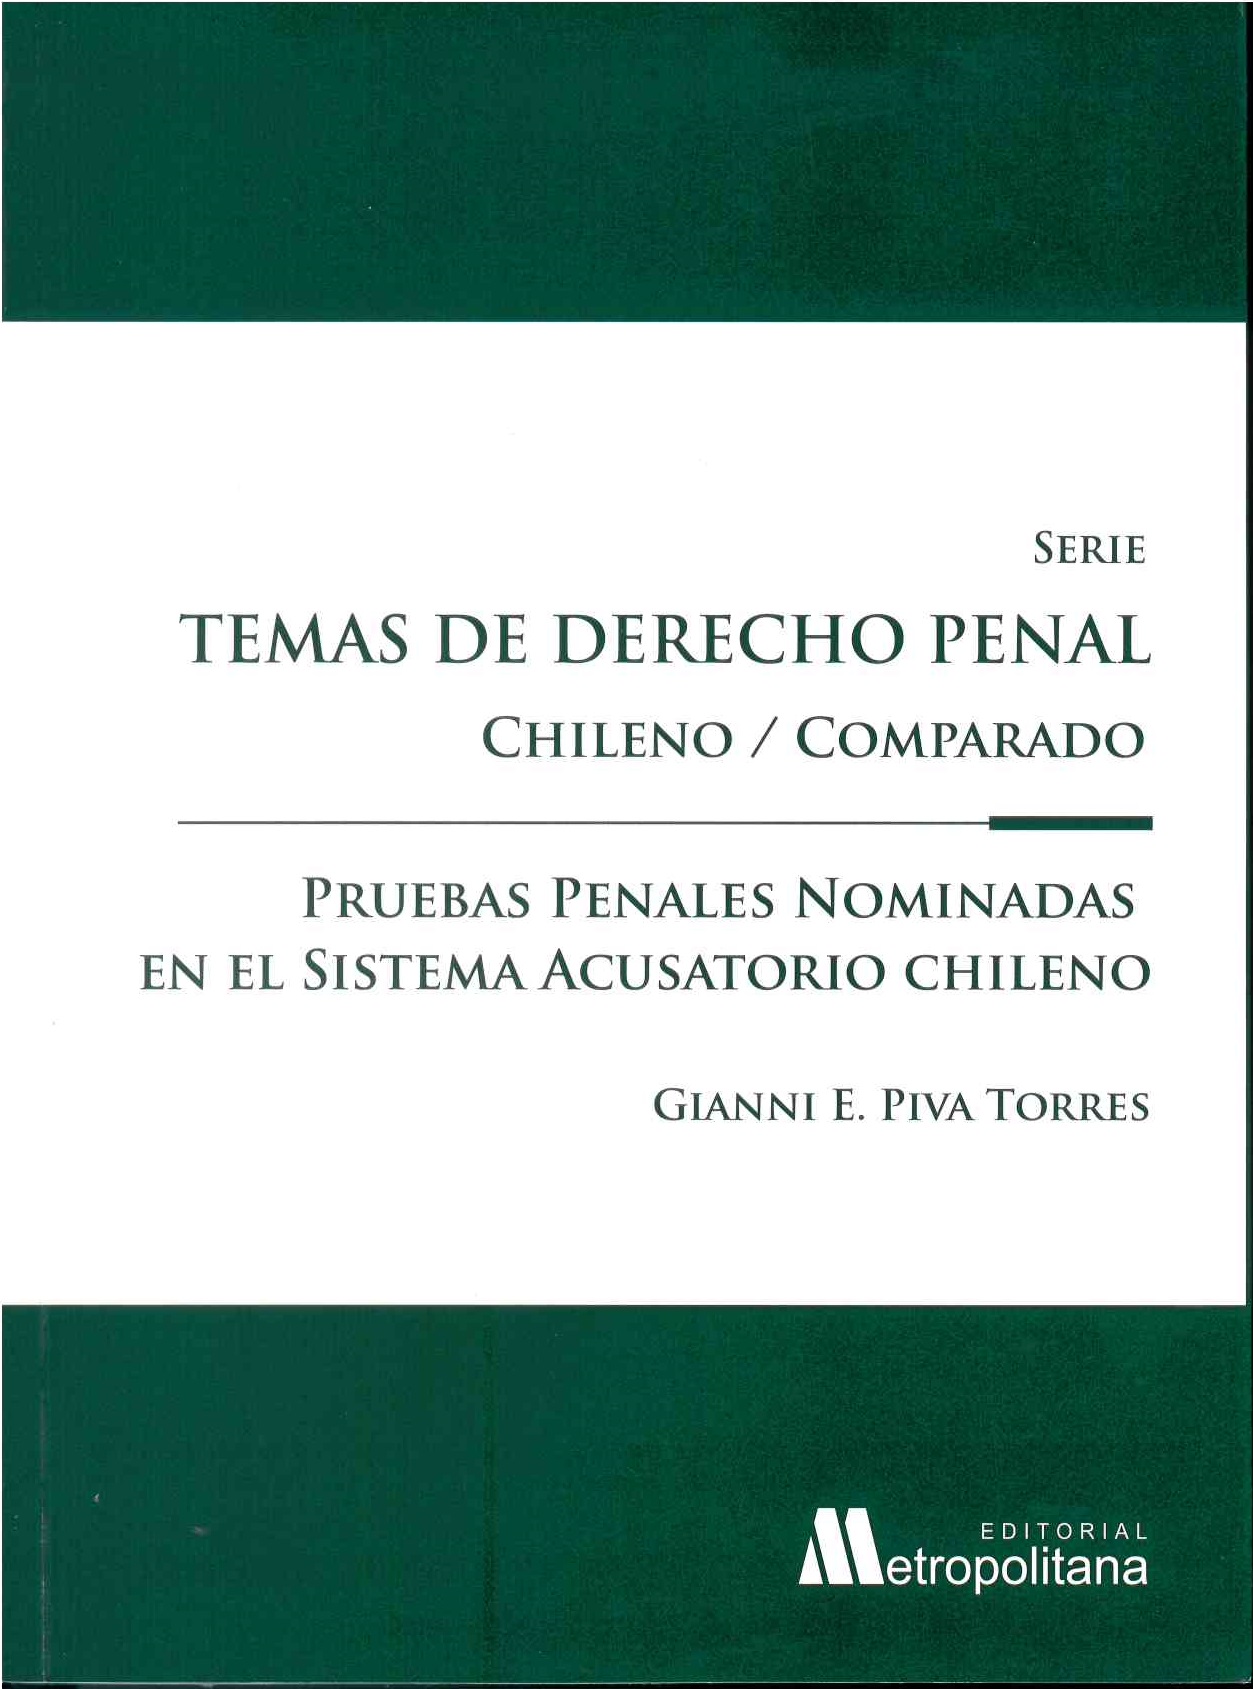 Pruebas penales nominadas en el sistema acusatorio chileno